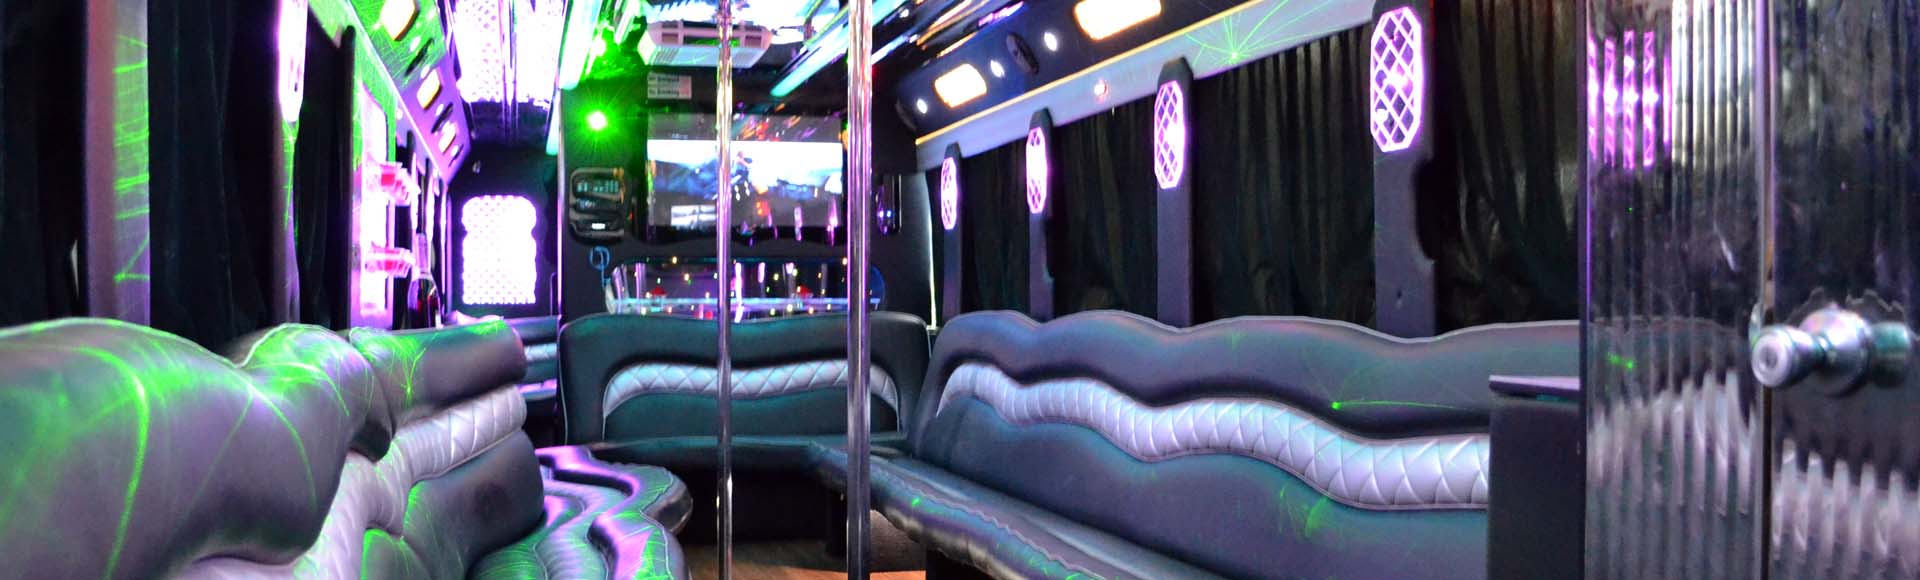 Party bus Interior